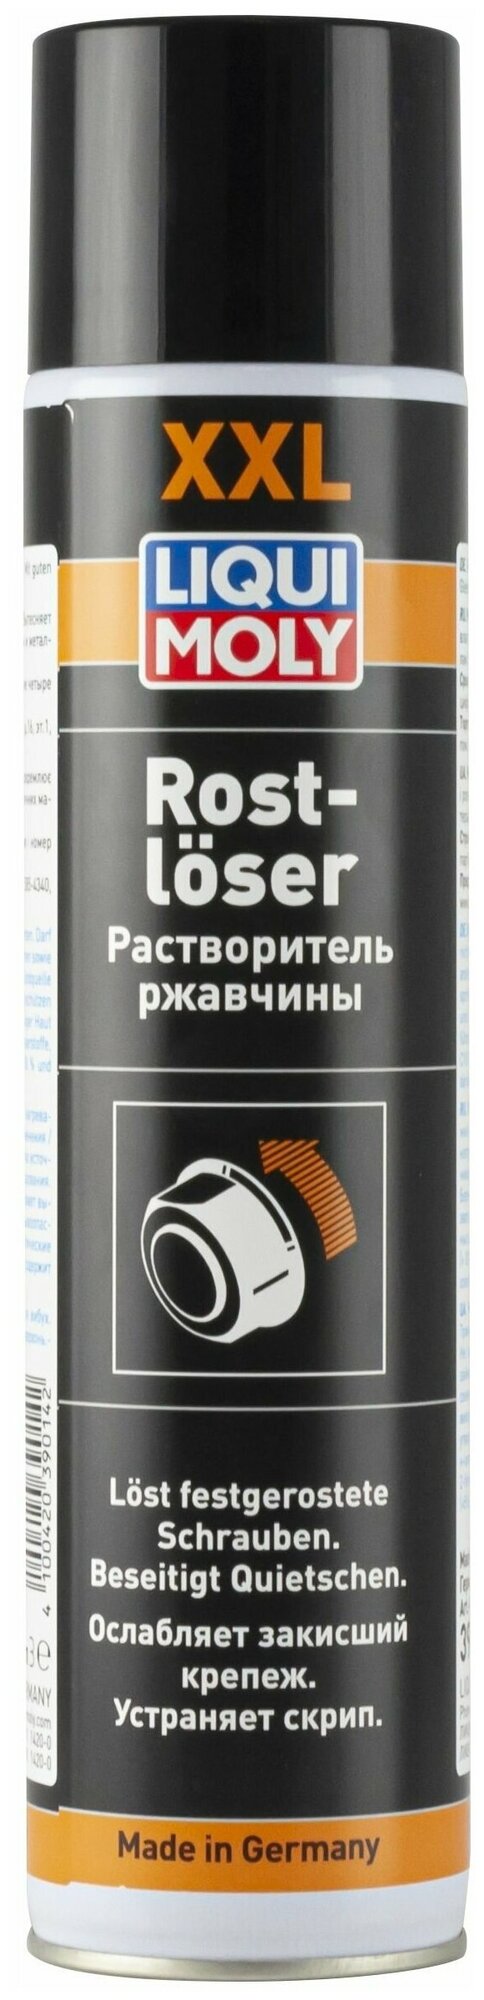 Растворитель ржавчины Rostloser (06 л)